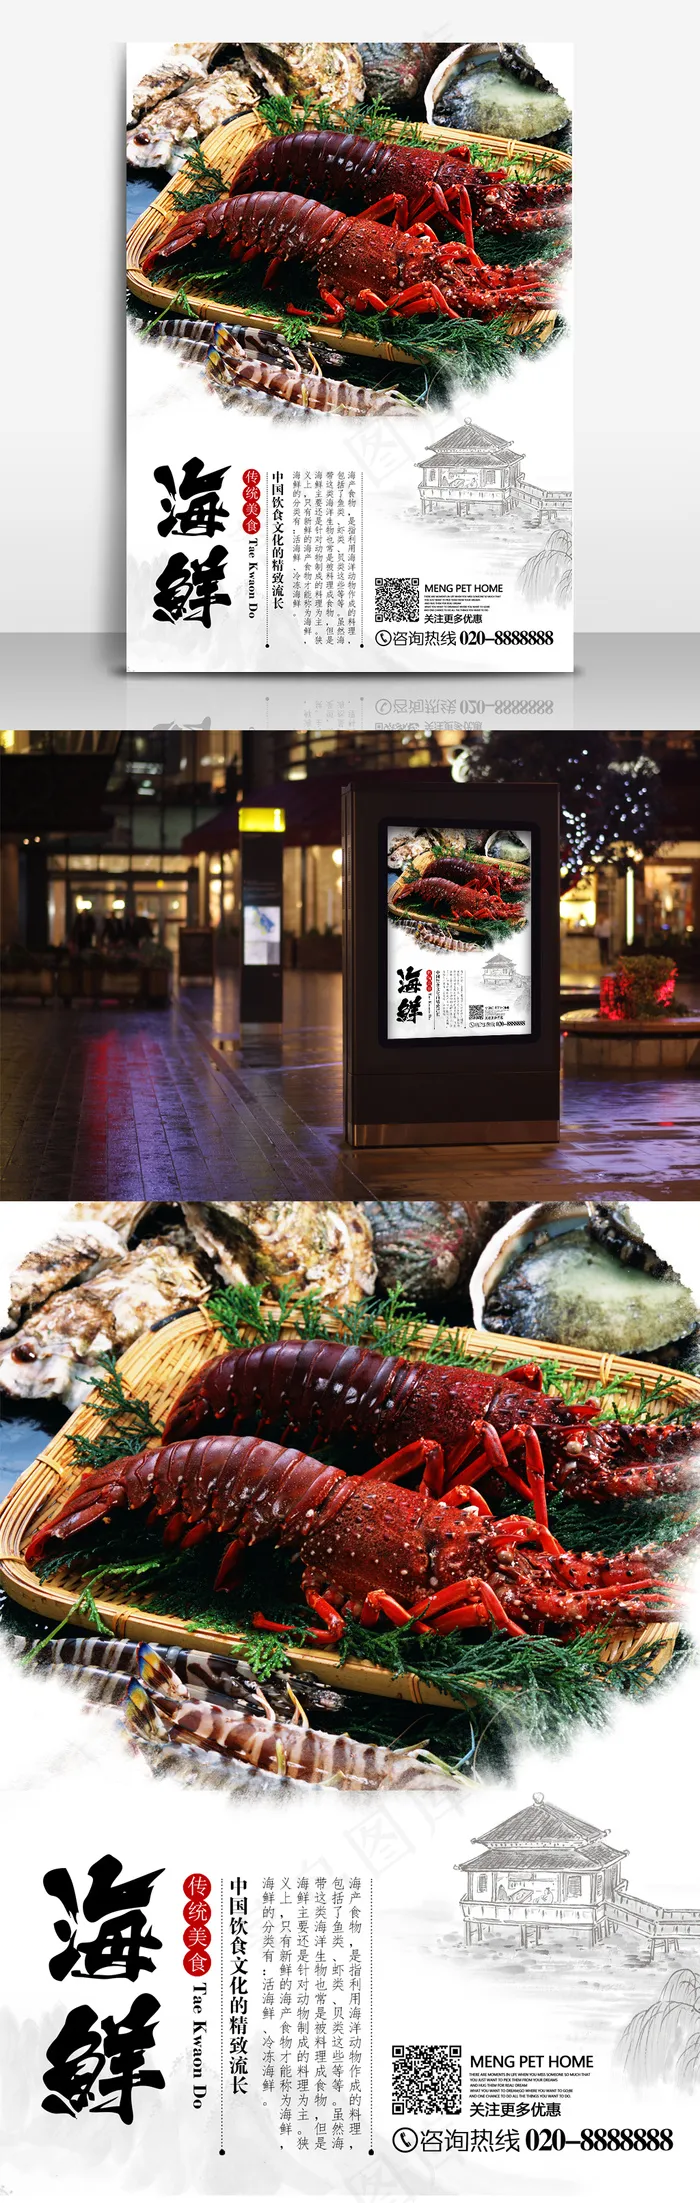 海鲜龙虾美食酒店自助餐海报